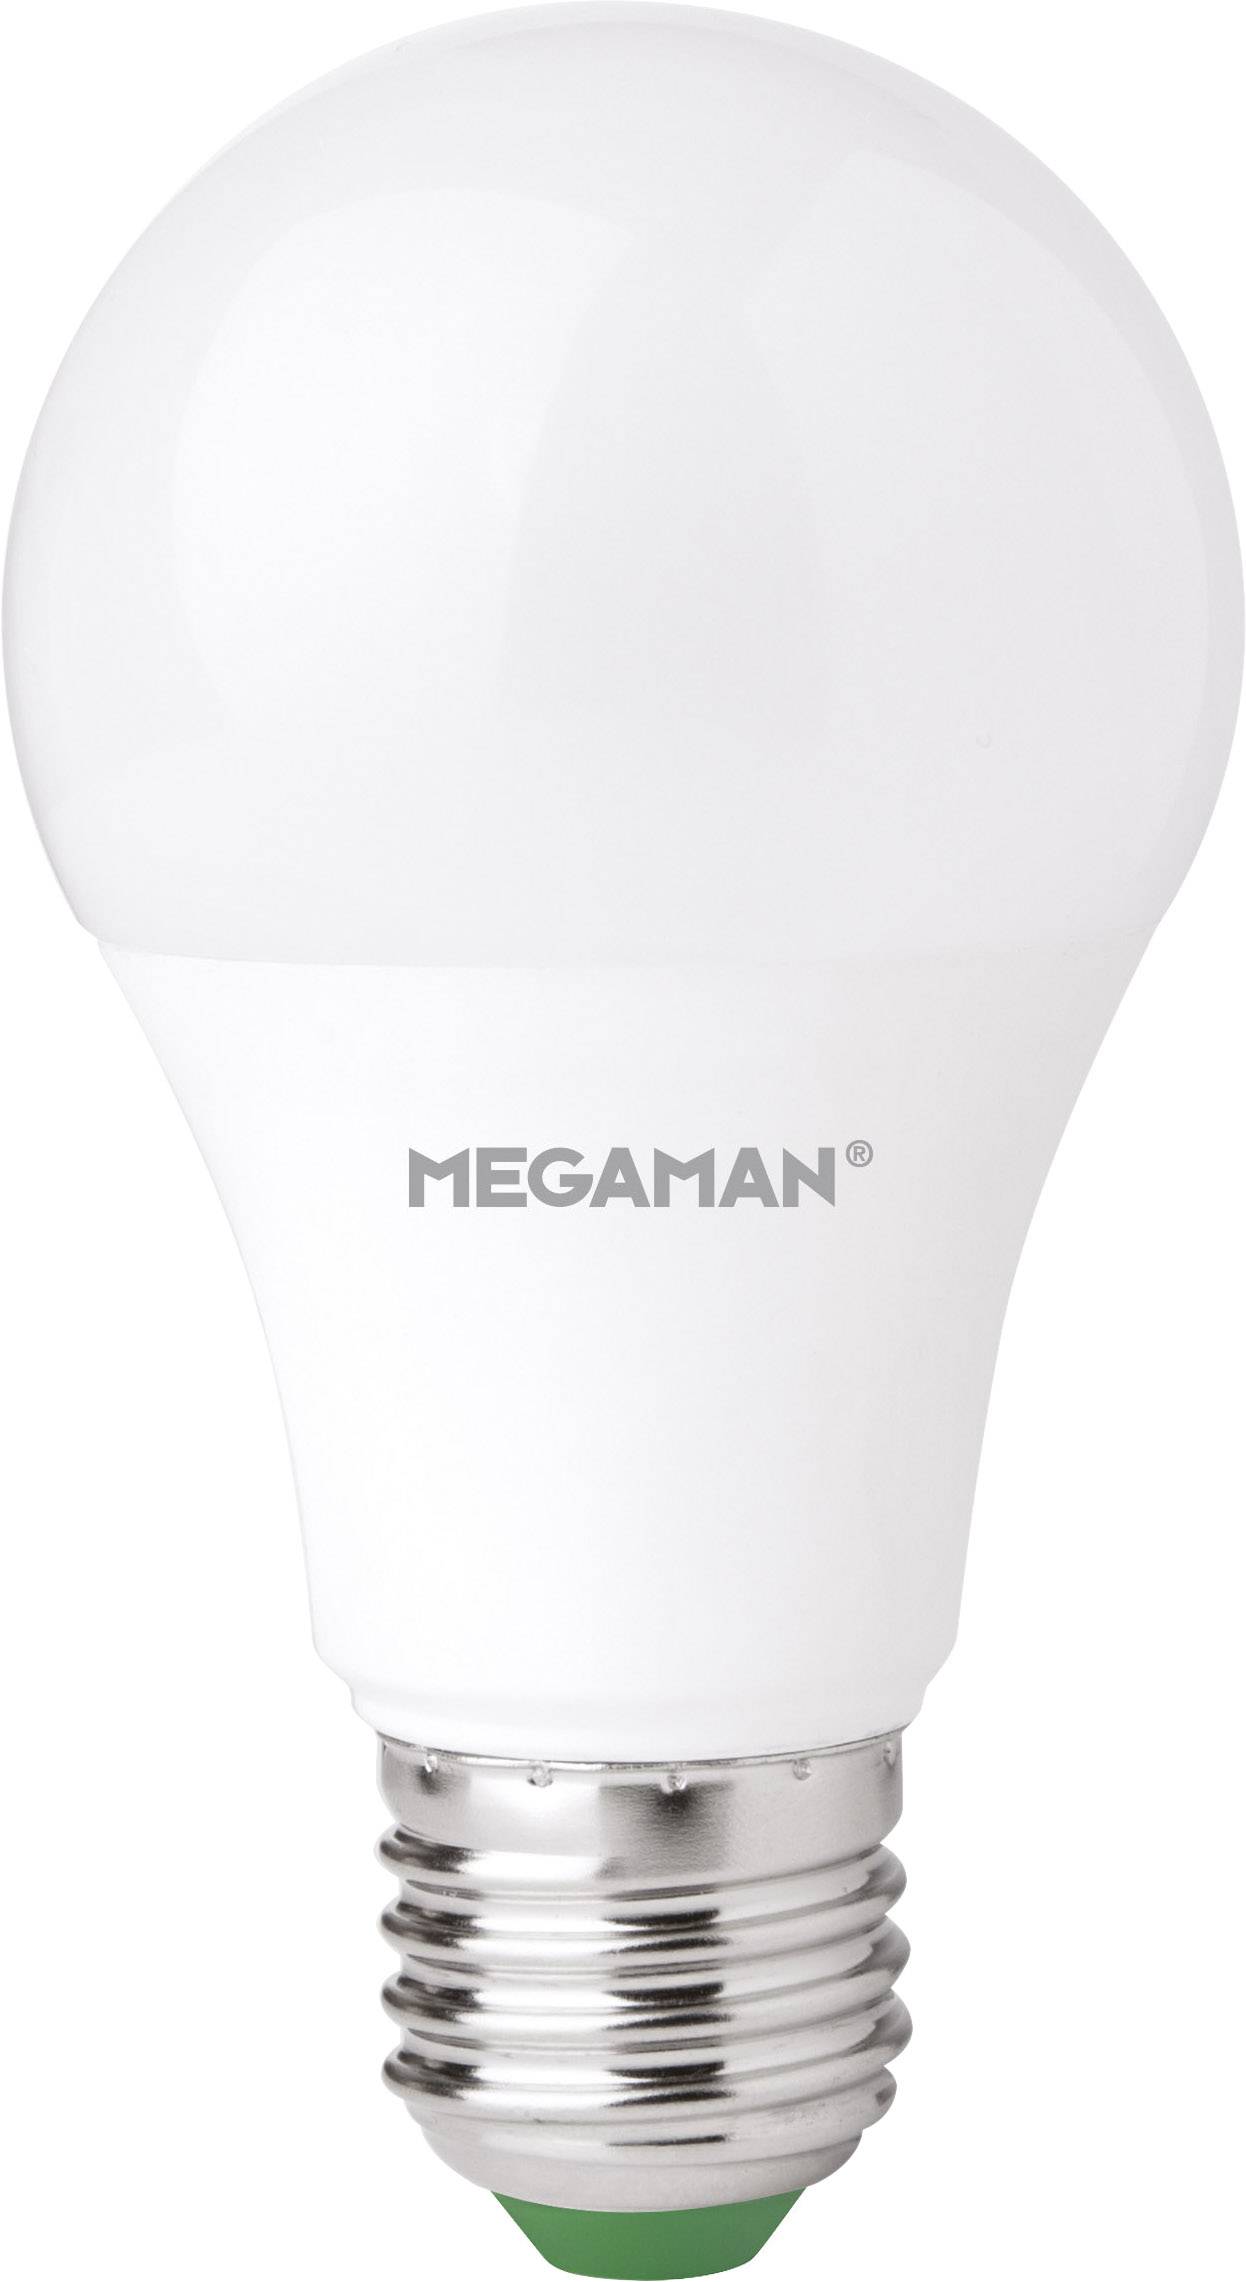 MEGAMAN LED-Classic CompactDIM MM21127 9W828 E27 A60 810lm 2800K